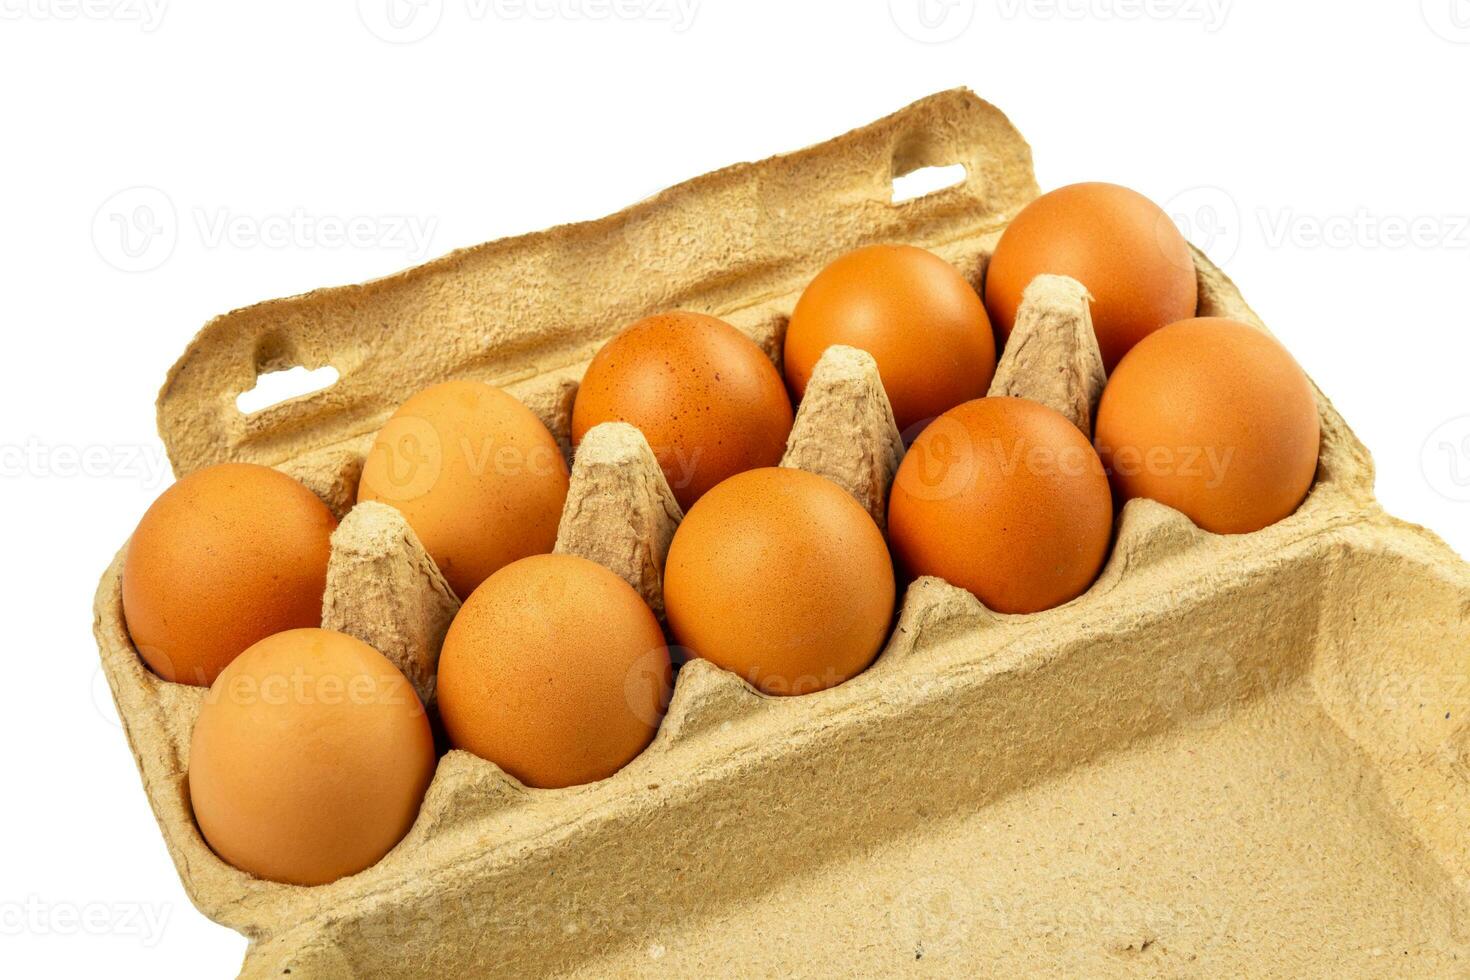 dieci uova nel confezione carta muffa scatola foto